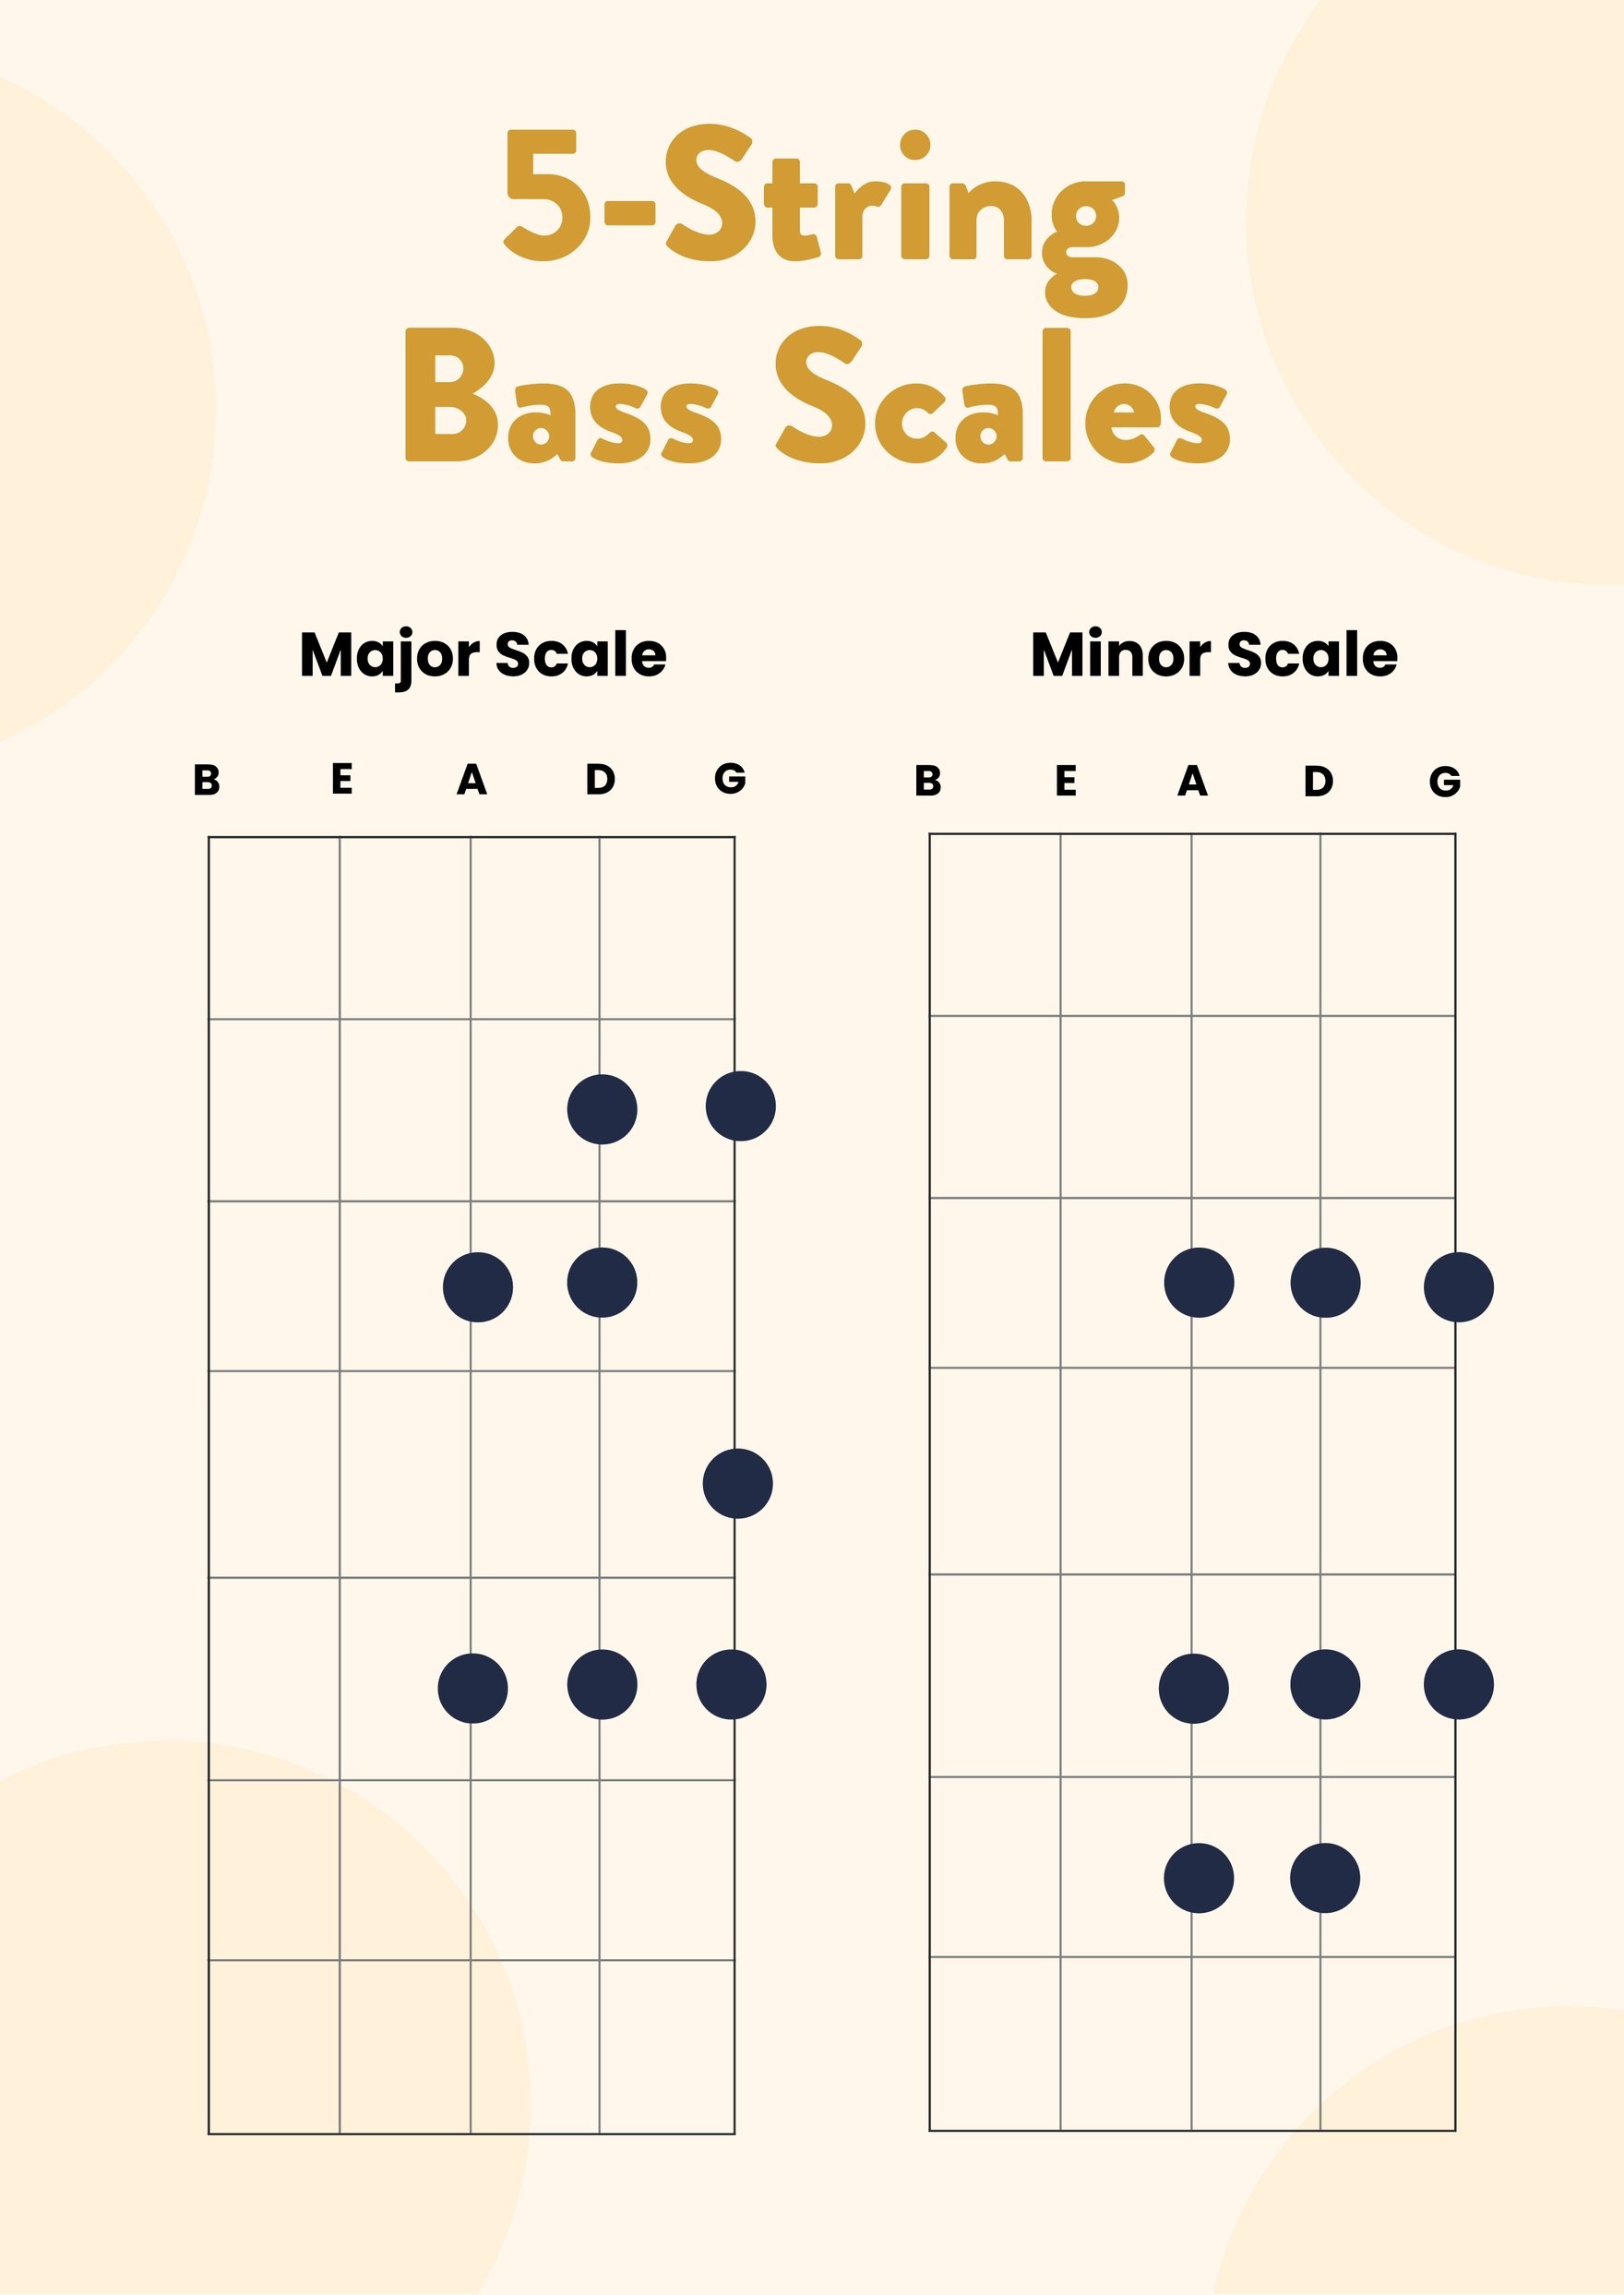 https://images.template.net/120665/five-string-bass-guitar-scales-chart-teh49.jpg